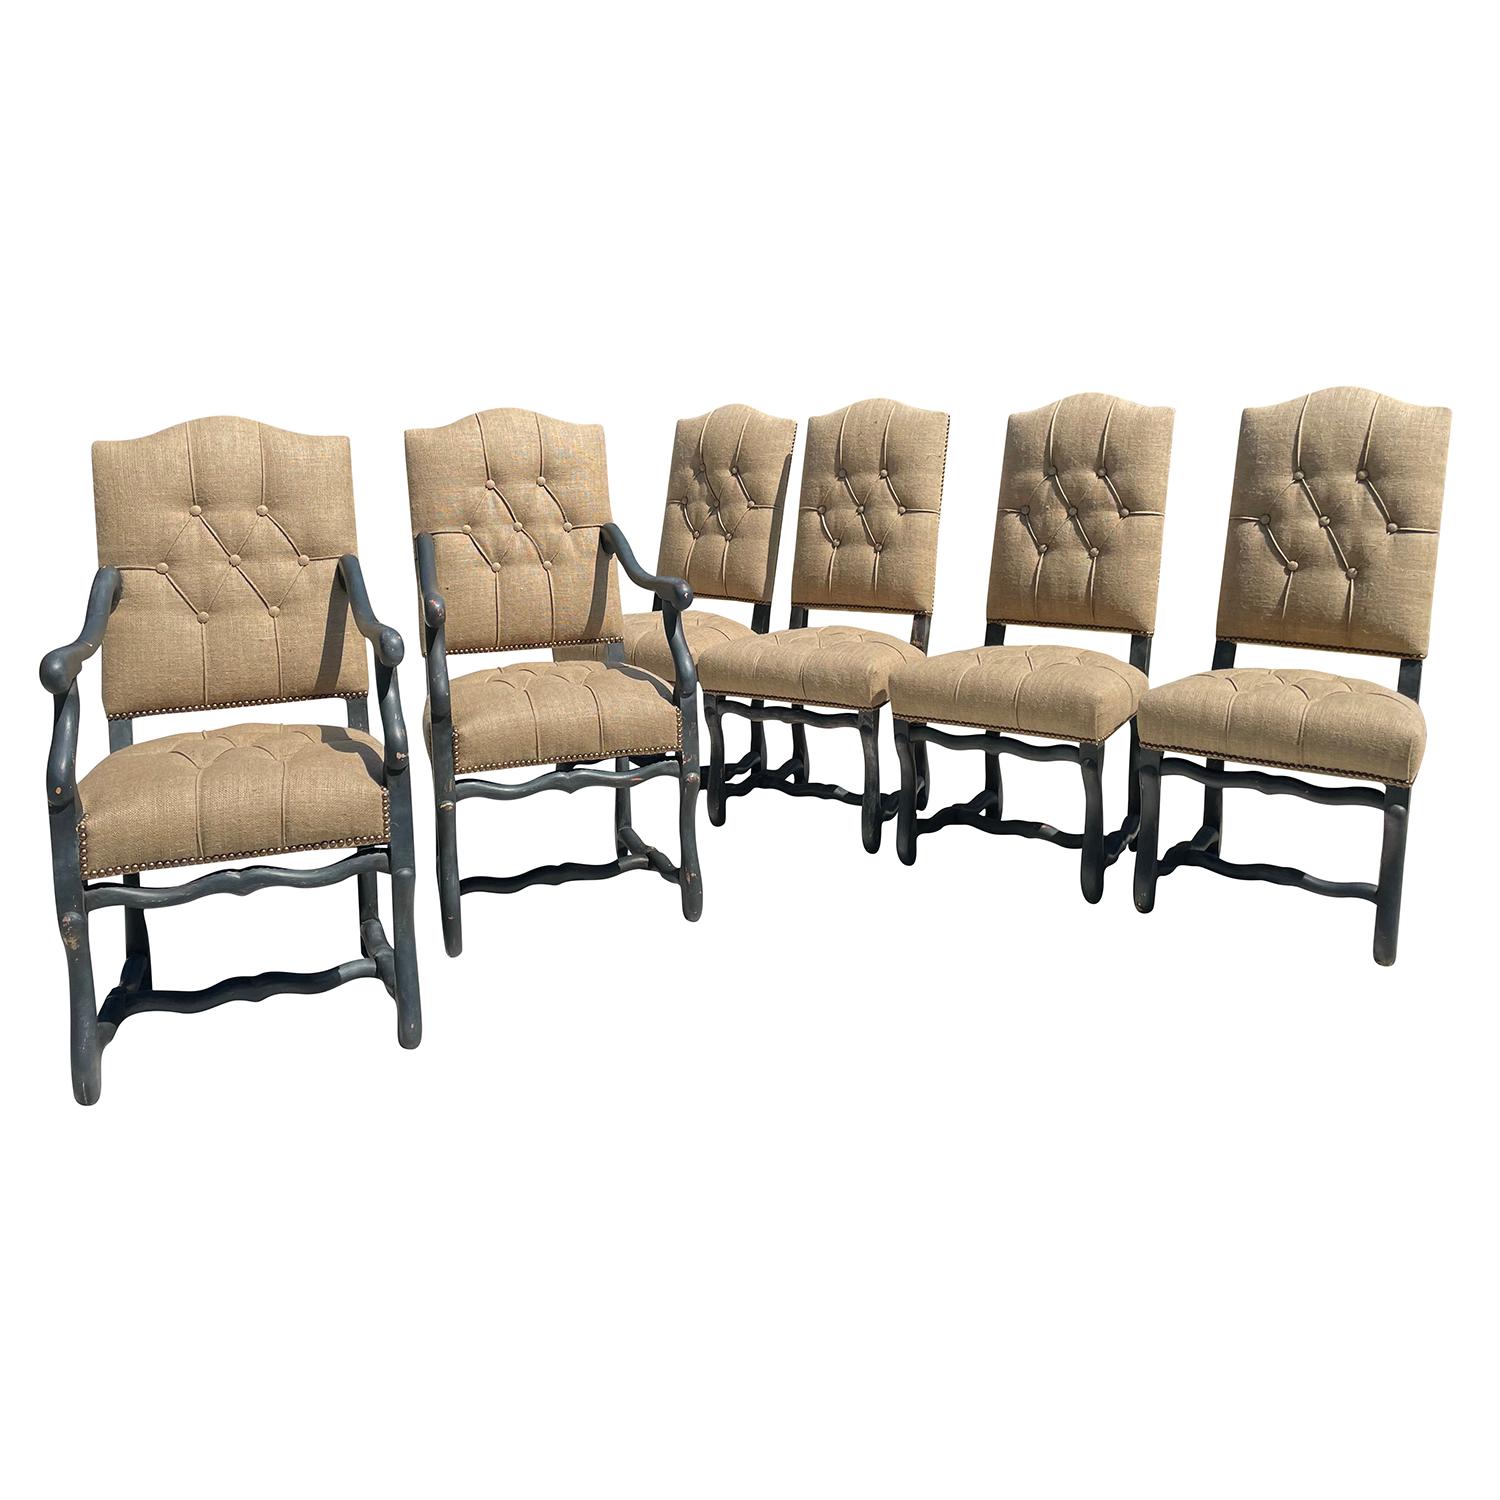 Ein schwarzer, antiker französischer Satz von sechs os du mouton (Schafsknochen) Esszimmerstühlen, bestehend aus zwei Sesseln und vier Beistellstühlen aus handgefertigtem, lackiertem Buchenholz, in gutem Zustand. Die Pariser Eckstühle haben eine